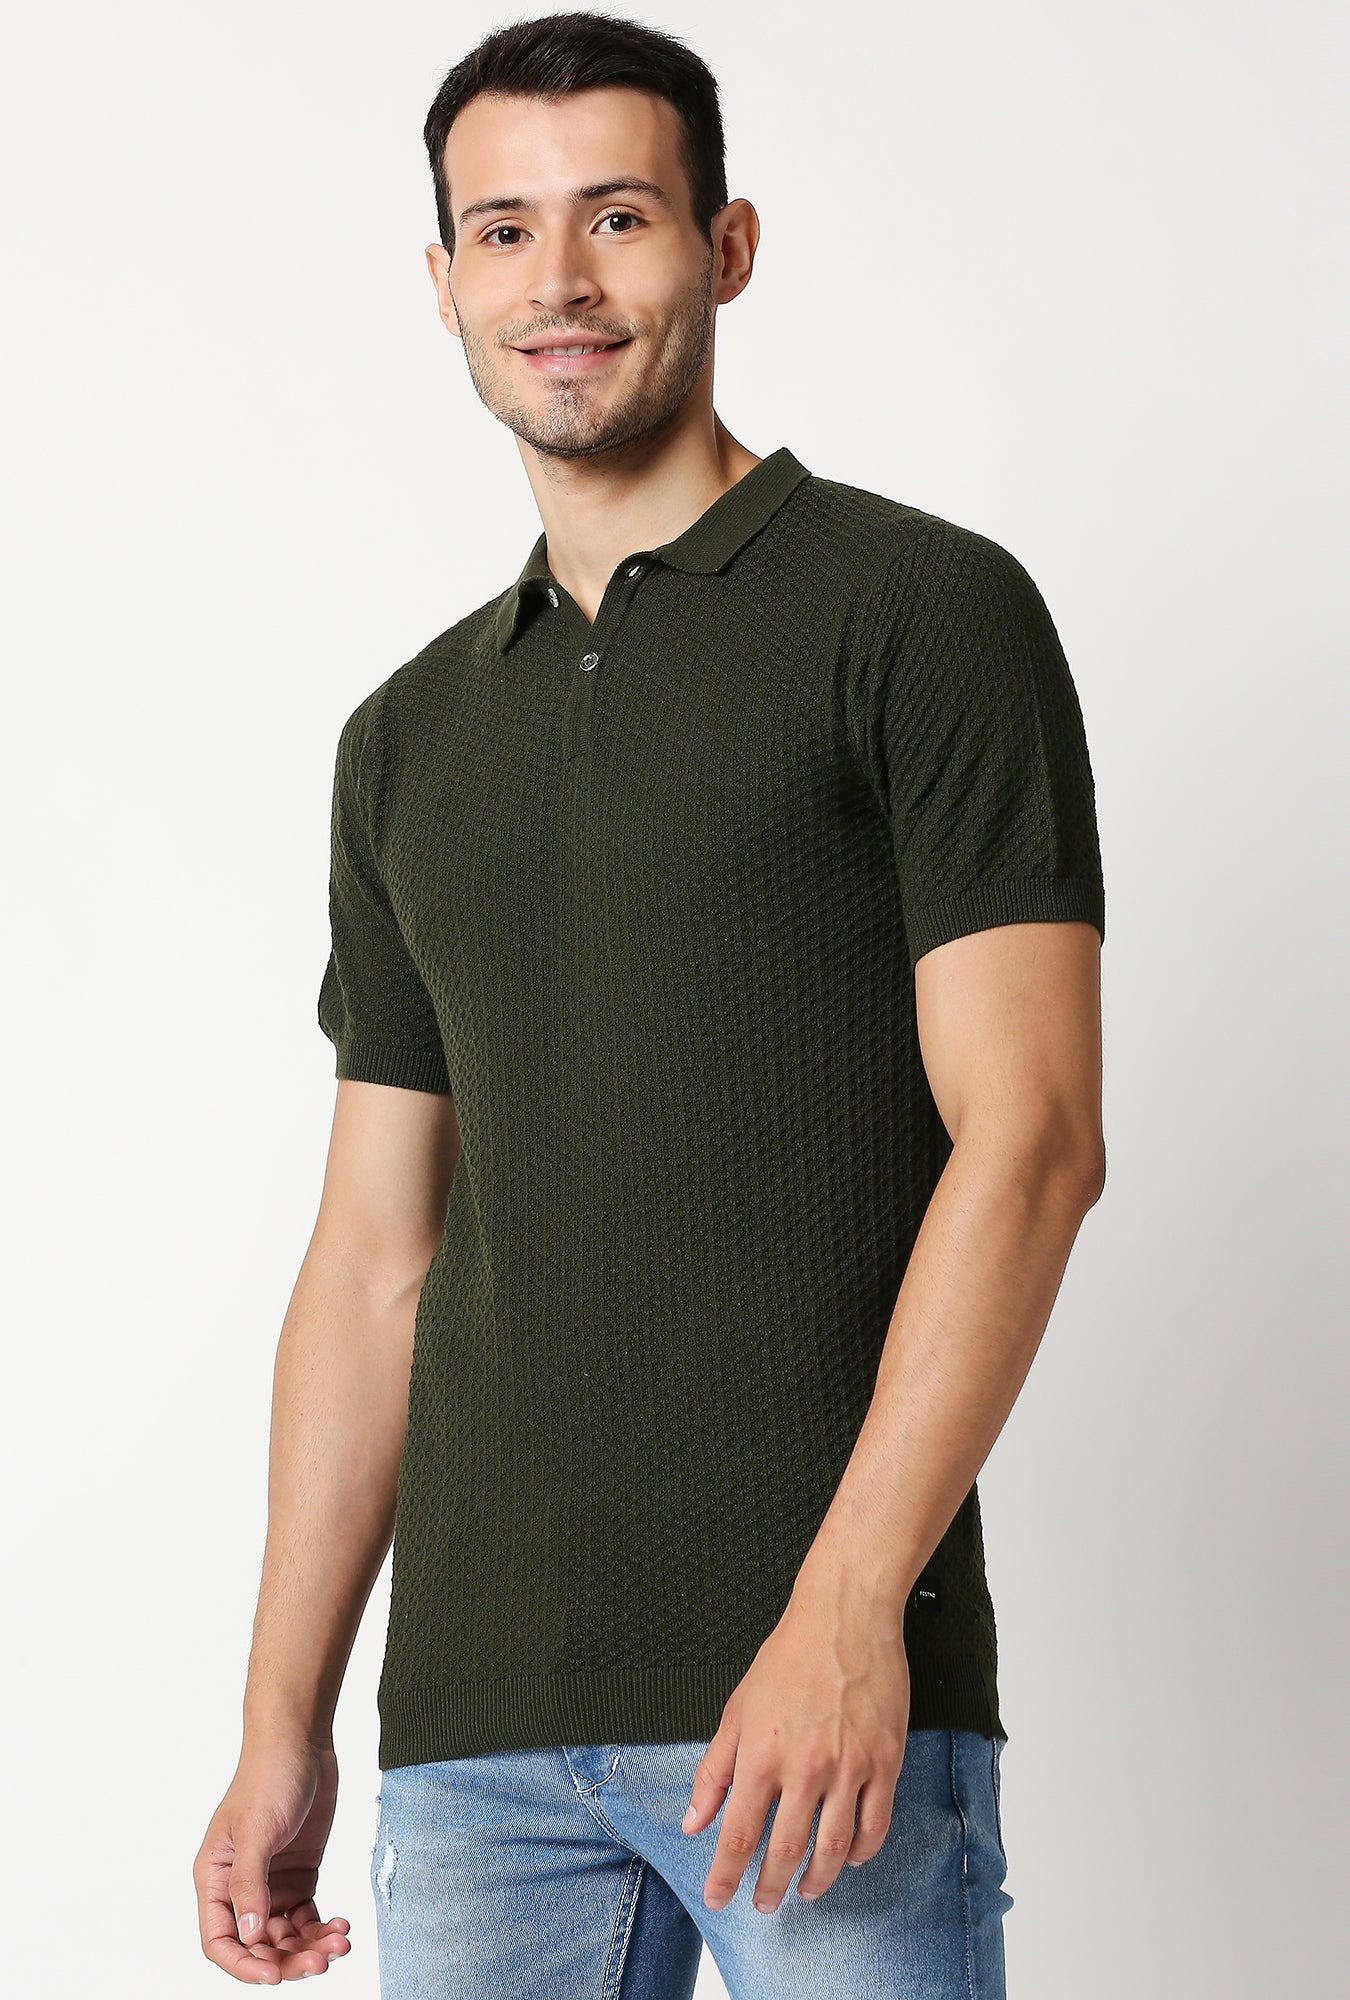 Fostino Beta Dark Green Polo T-Shirt - Fostino - T-Shirts